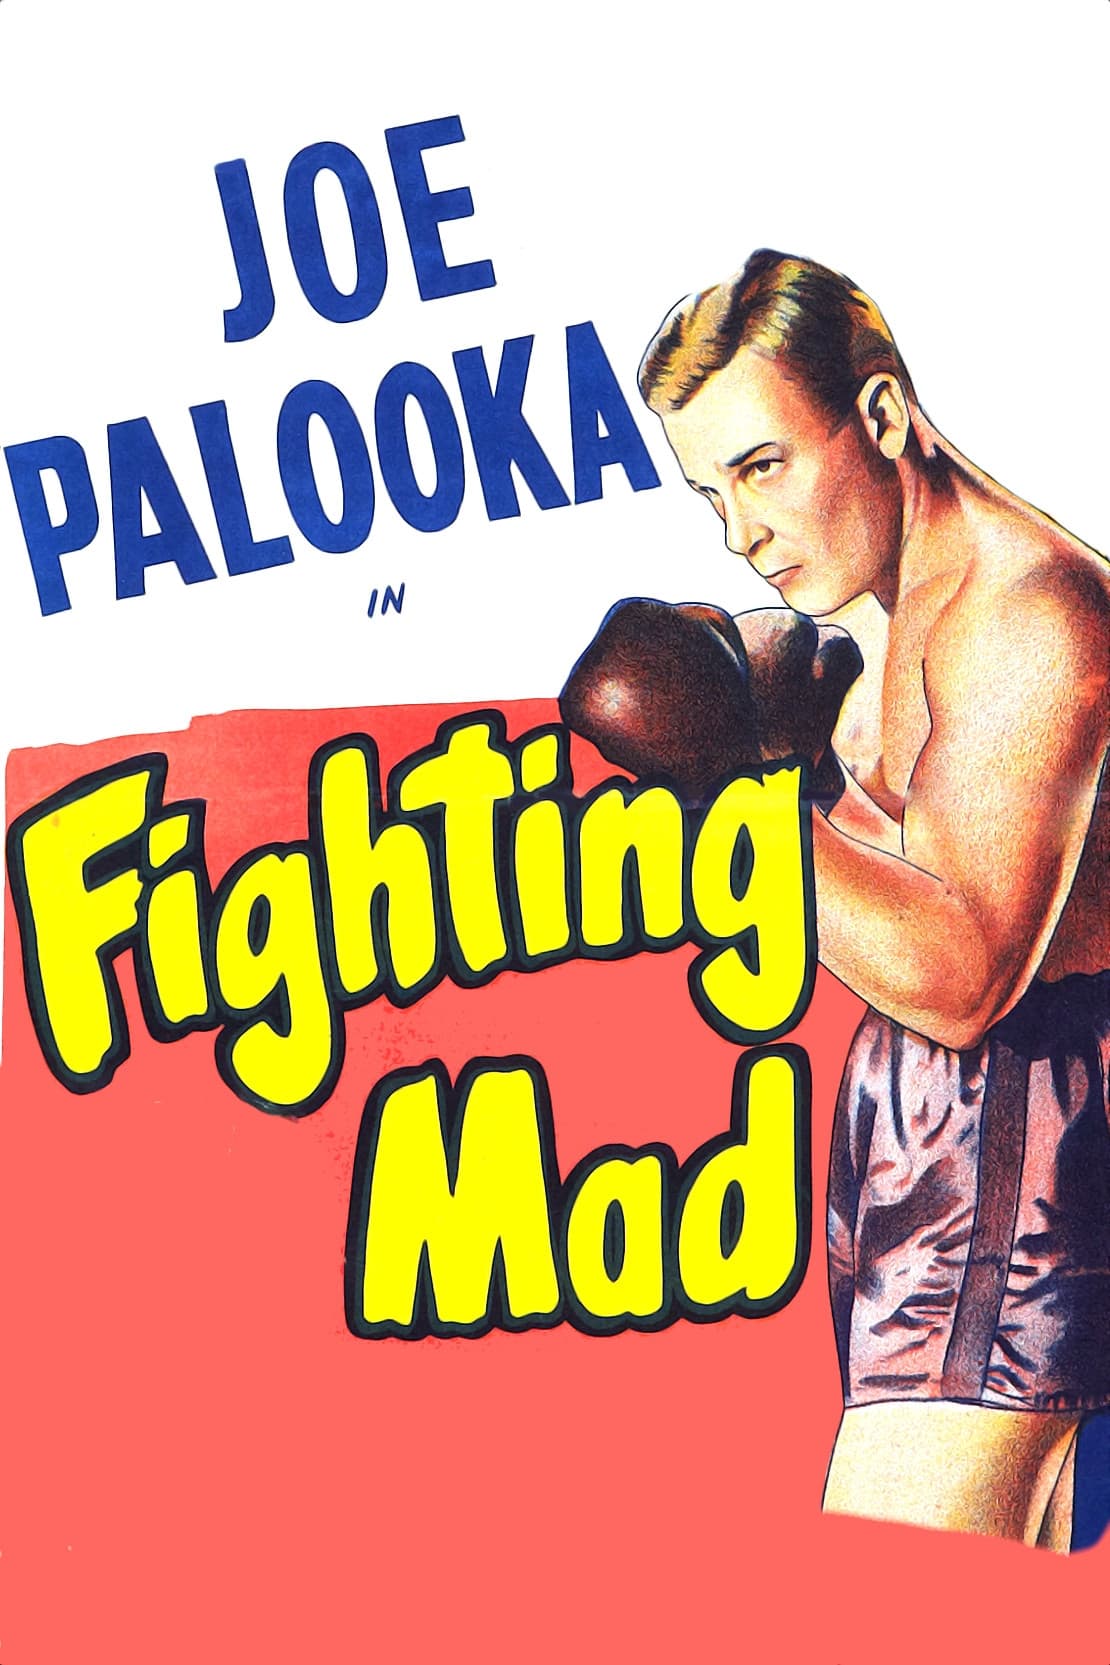 Joe Palooka in Fighting Mad (1948)